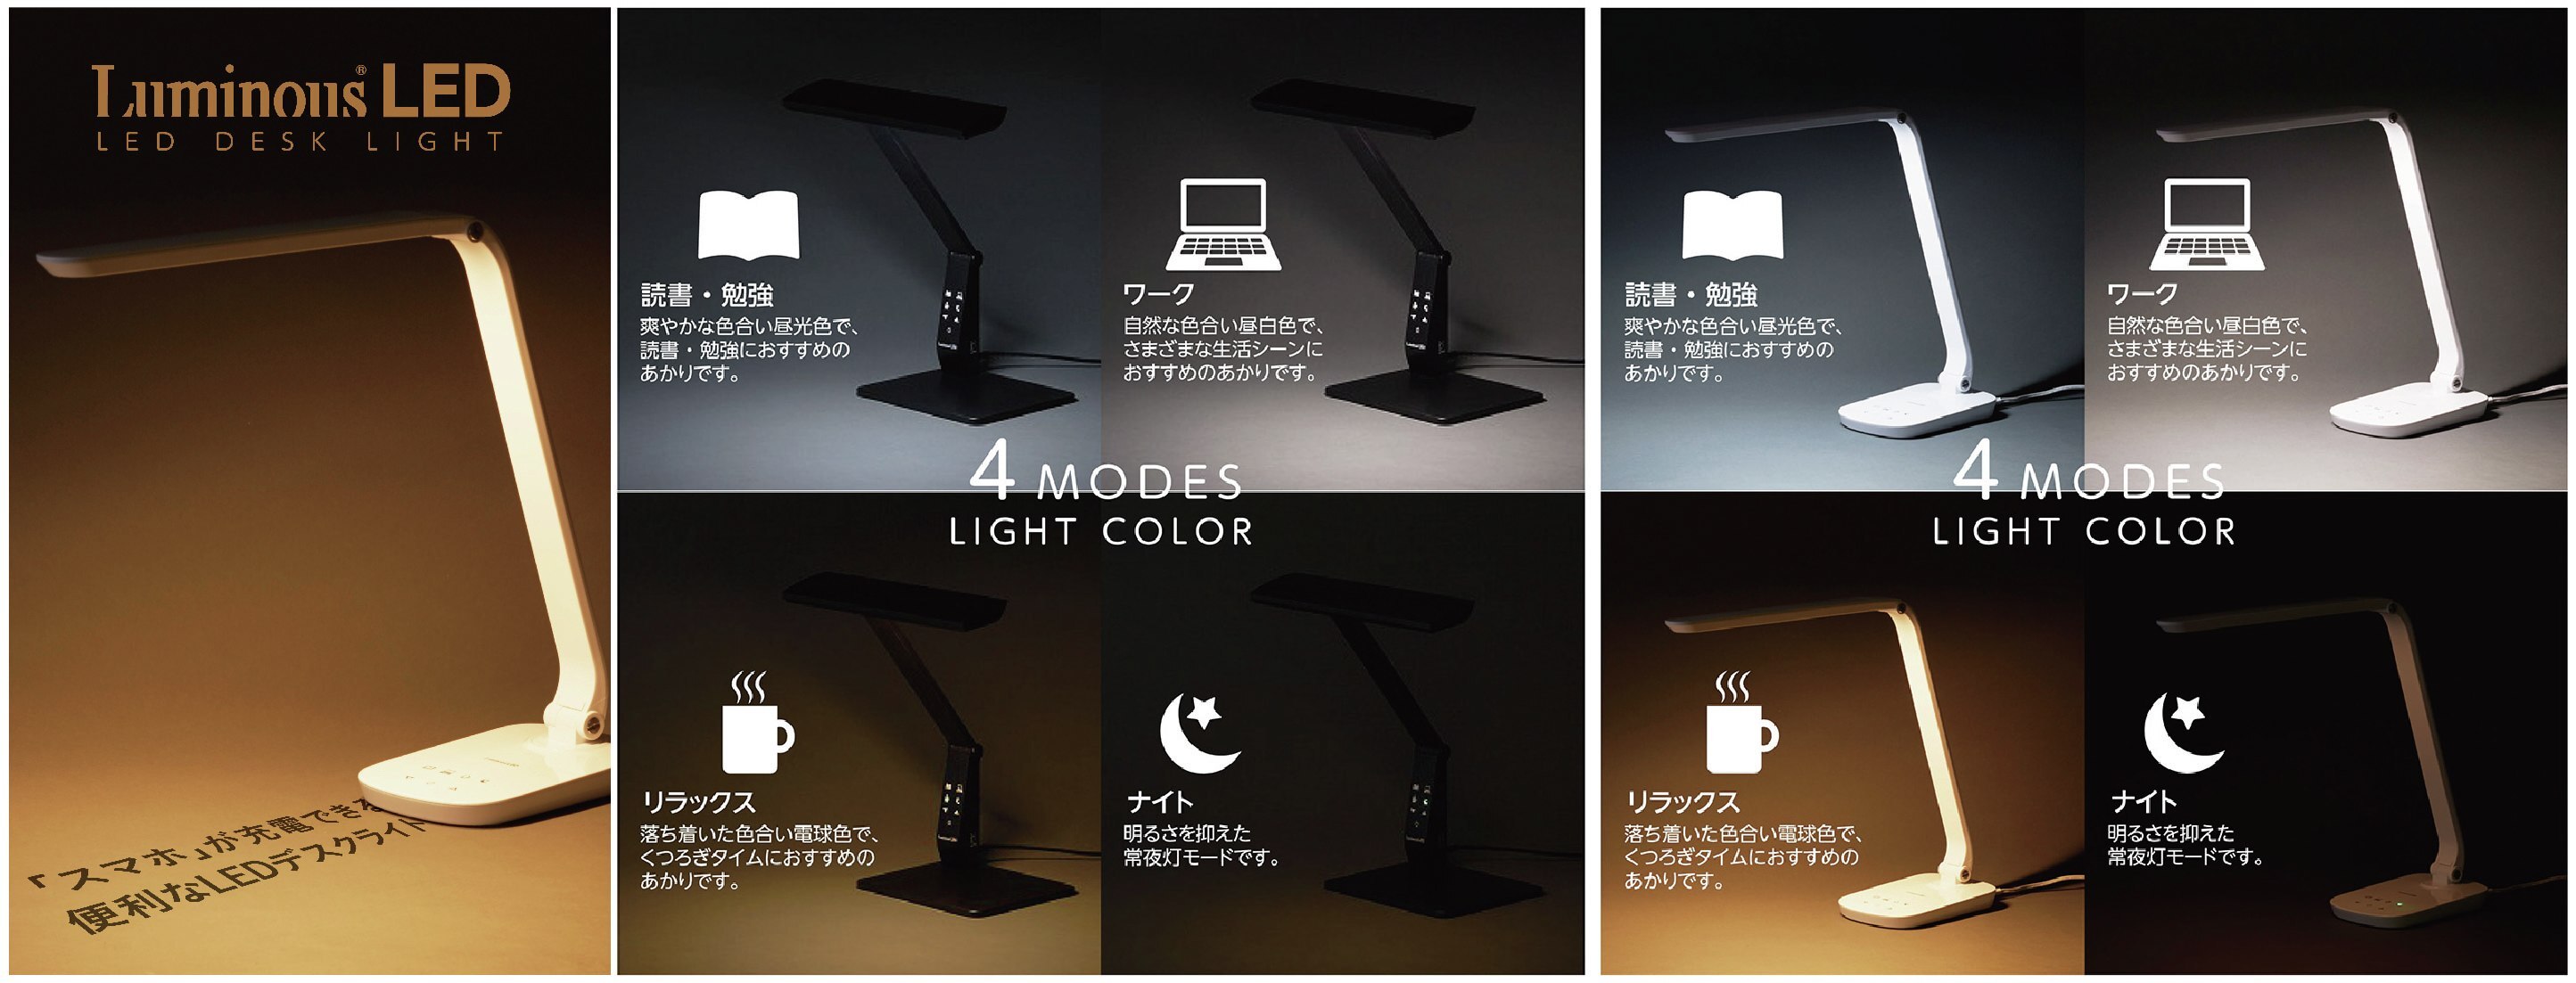 ルミナスLEDシリーズから「4モードワンタッチ調色機能LEDデスクライト」を発売｜株式会社ドウシシャのプレスリリース